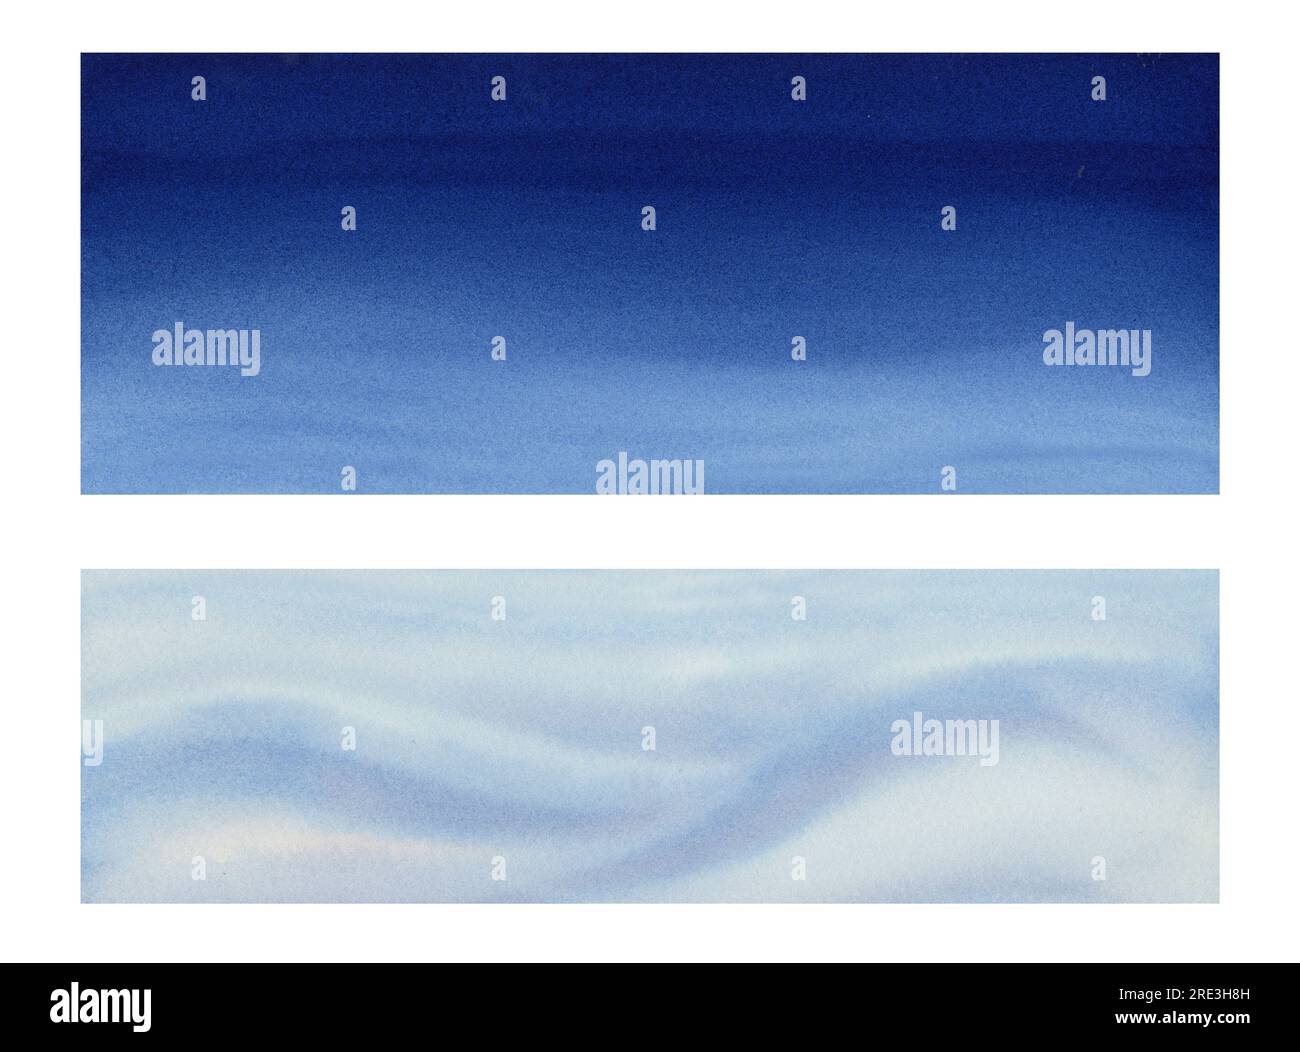 Elementi di design astratti ad acquerello per creare uno sfondo bianco e blu con macchie, schizzi, strisce, onde, sfumature di colore. Foto Stock